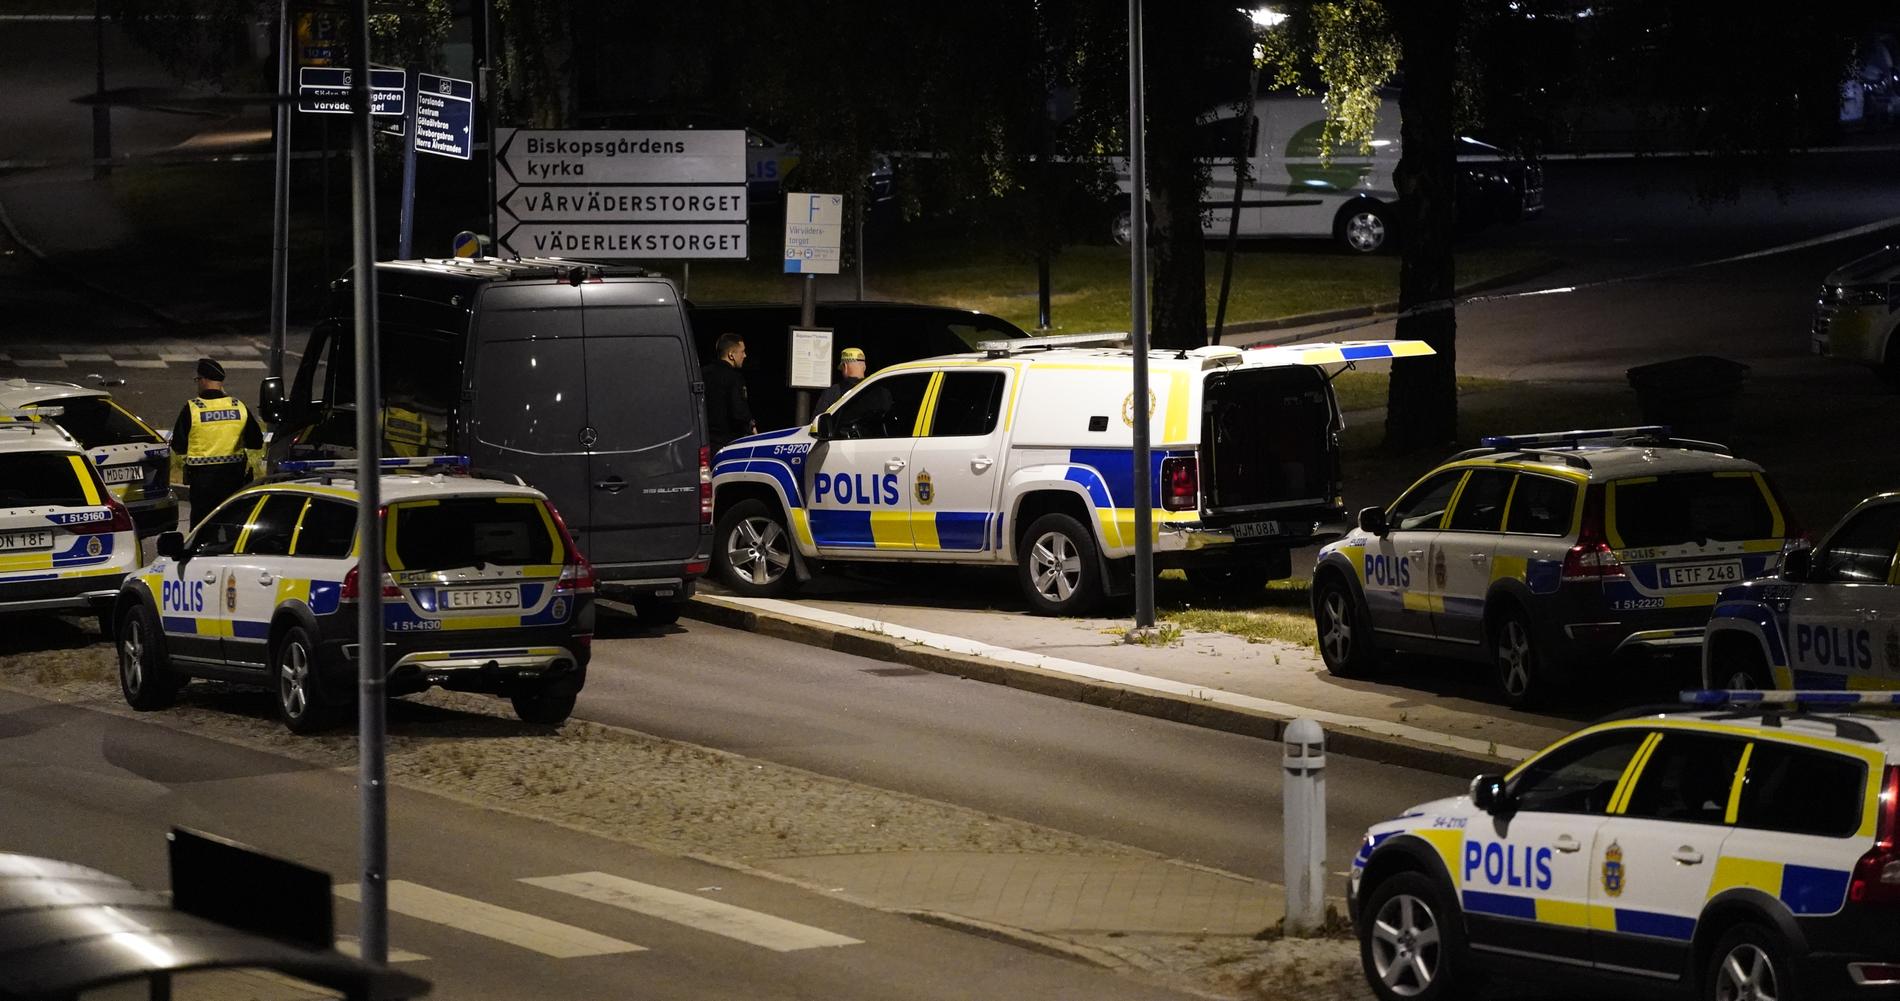 Polisinsats i Göteborg efter en skjutning i somras. 